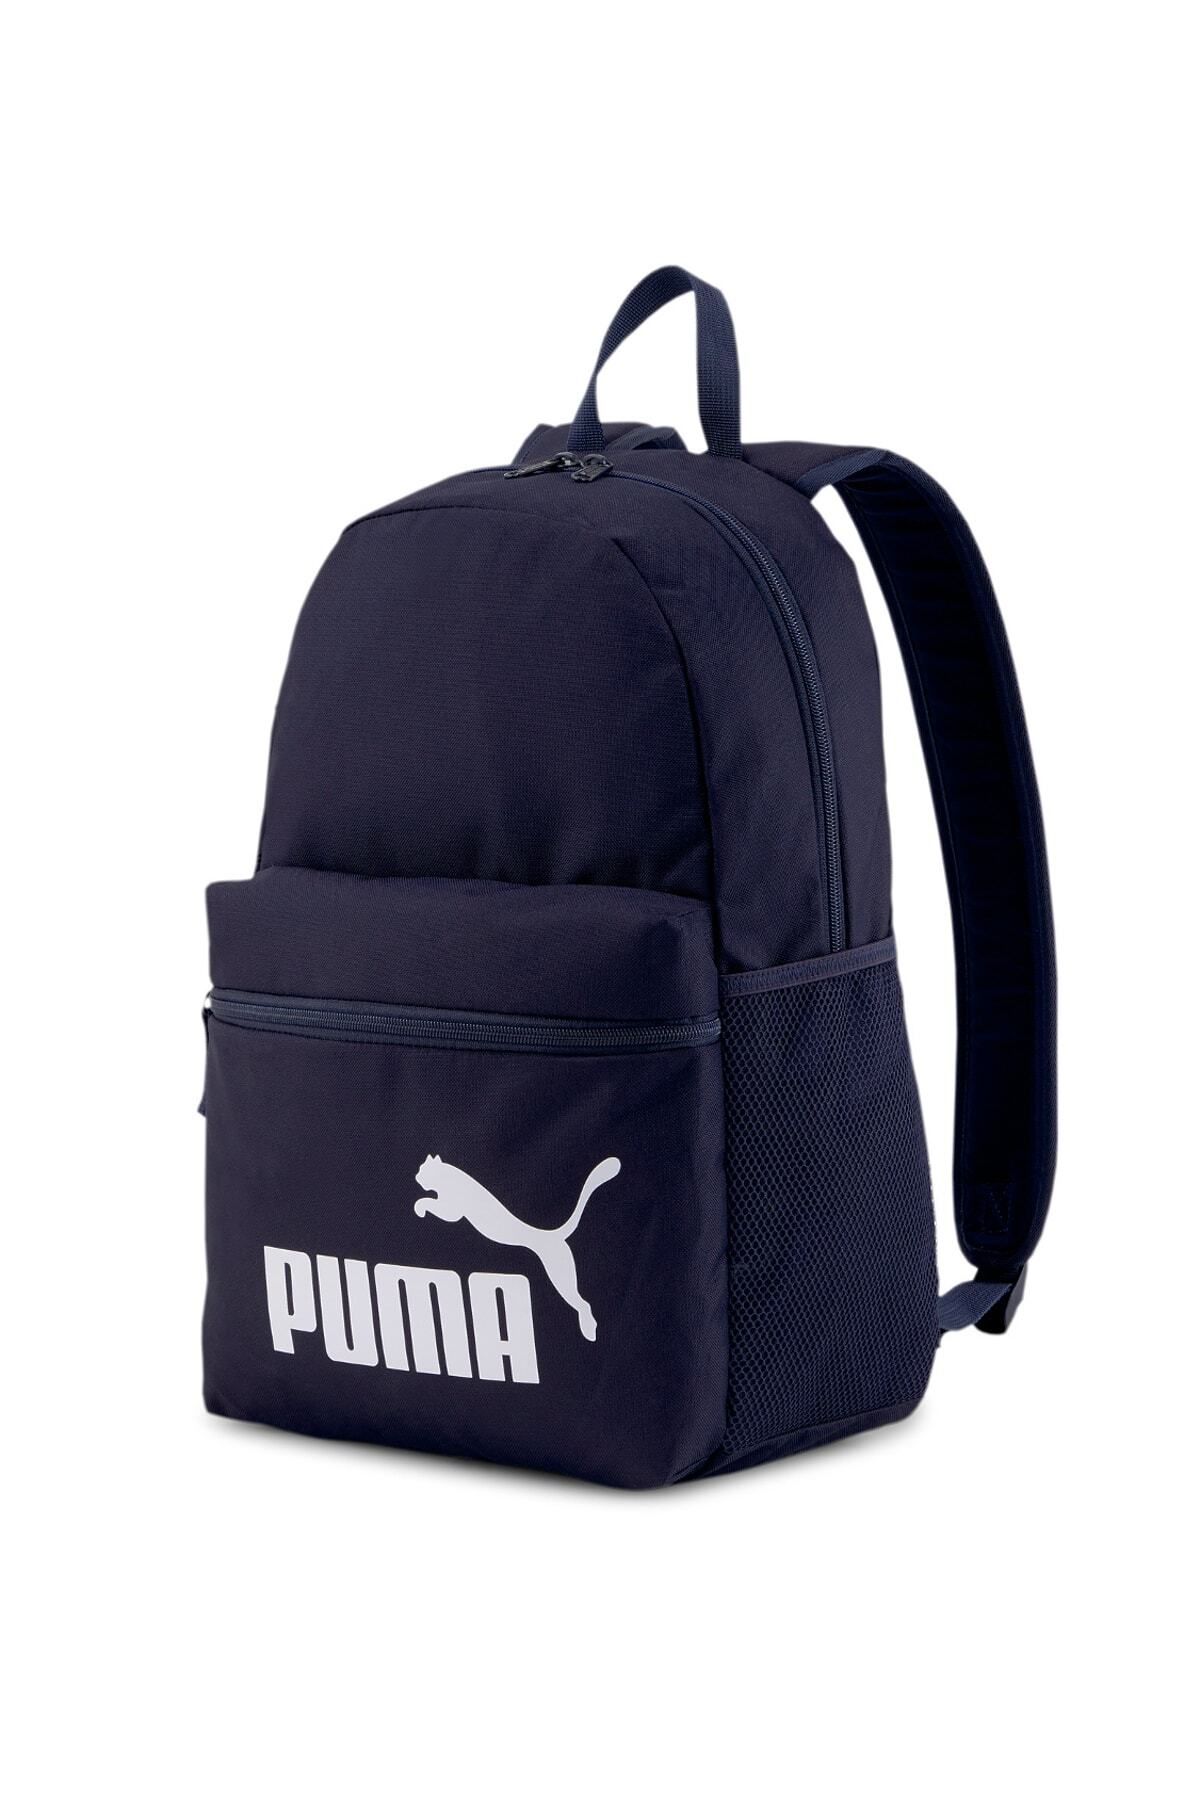 Puma Phase Backpack - Unisex Lacivert Sırt Çantası 44x30x14